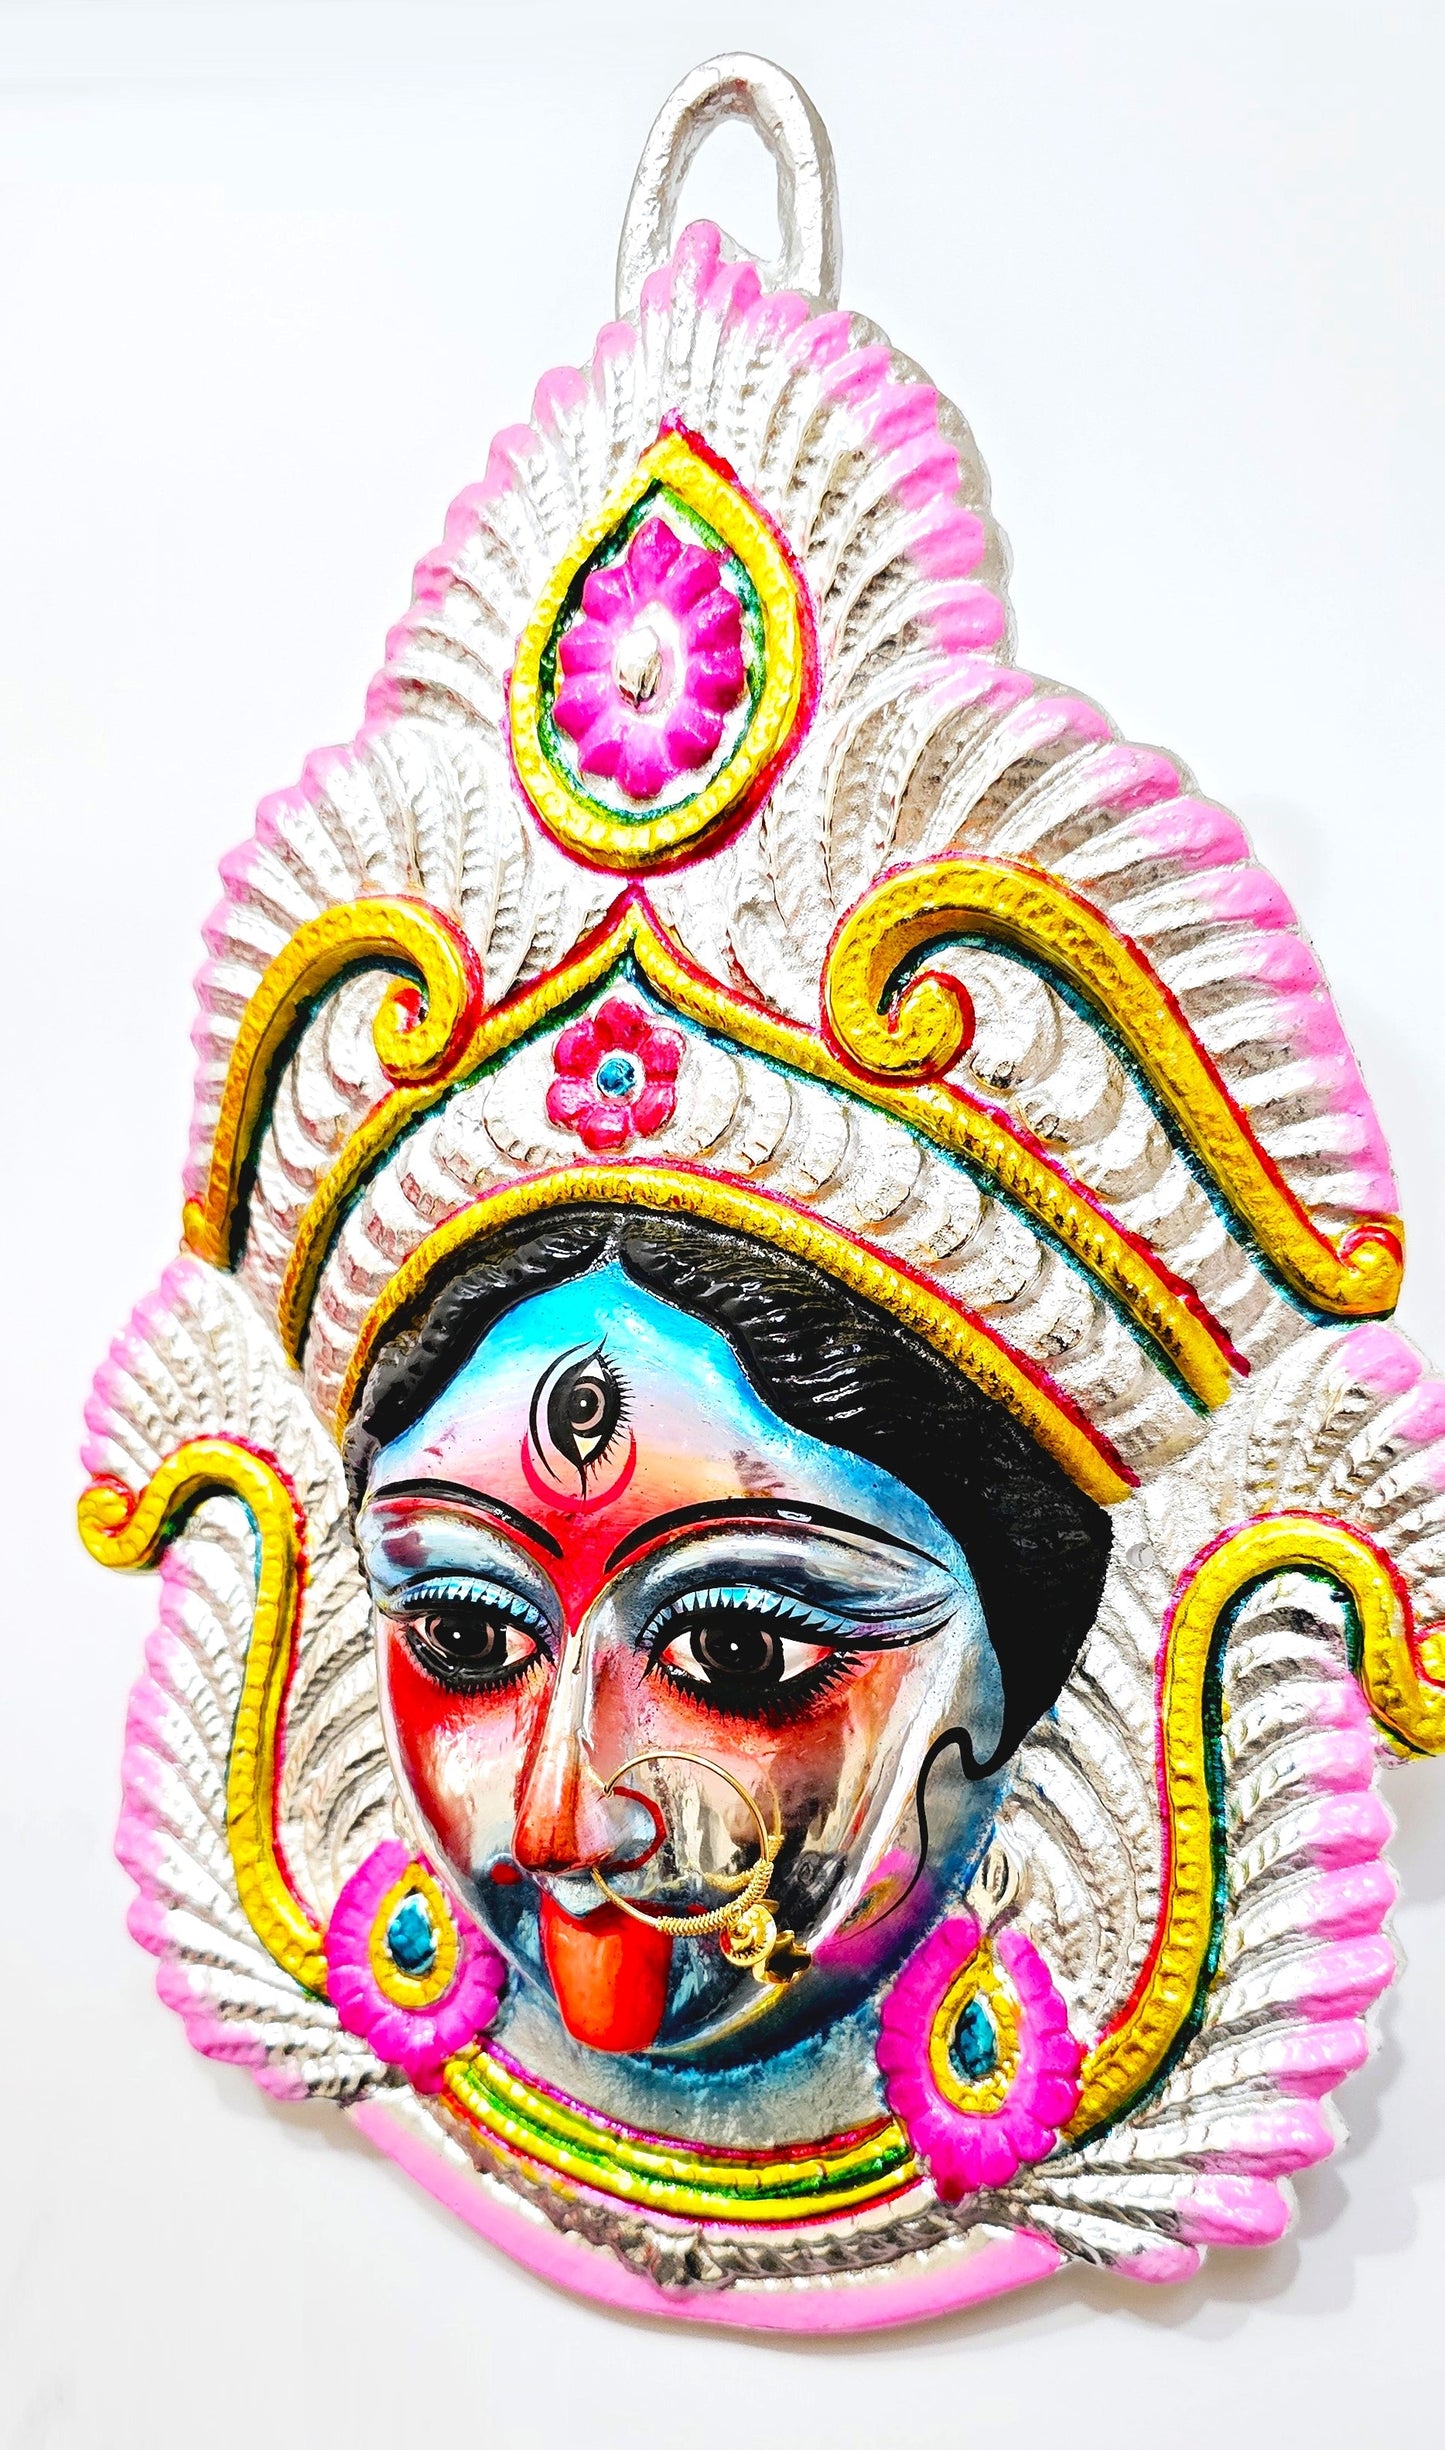 Goddess Kali Maa Mata wall hanging face